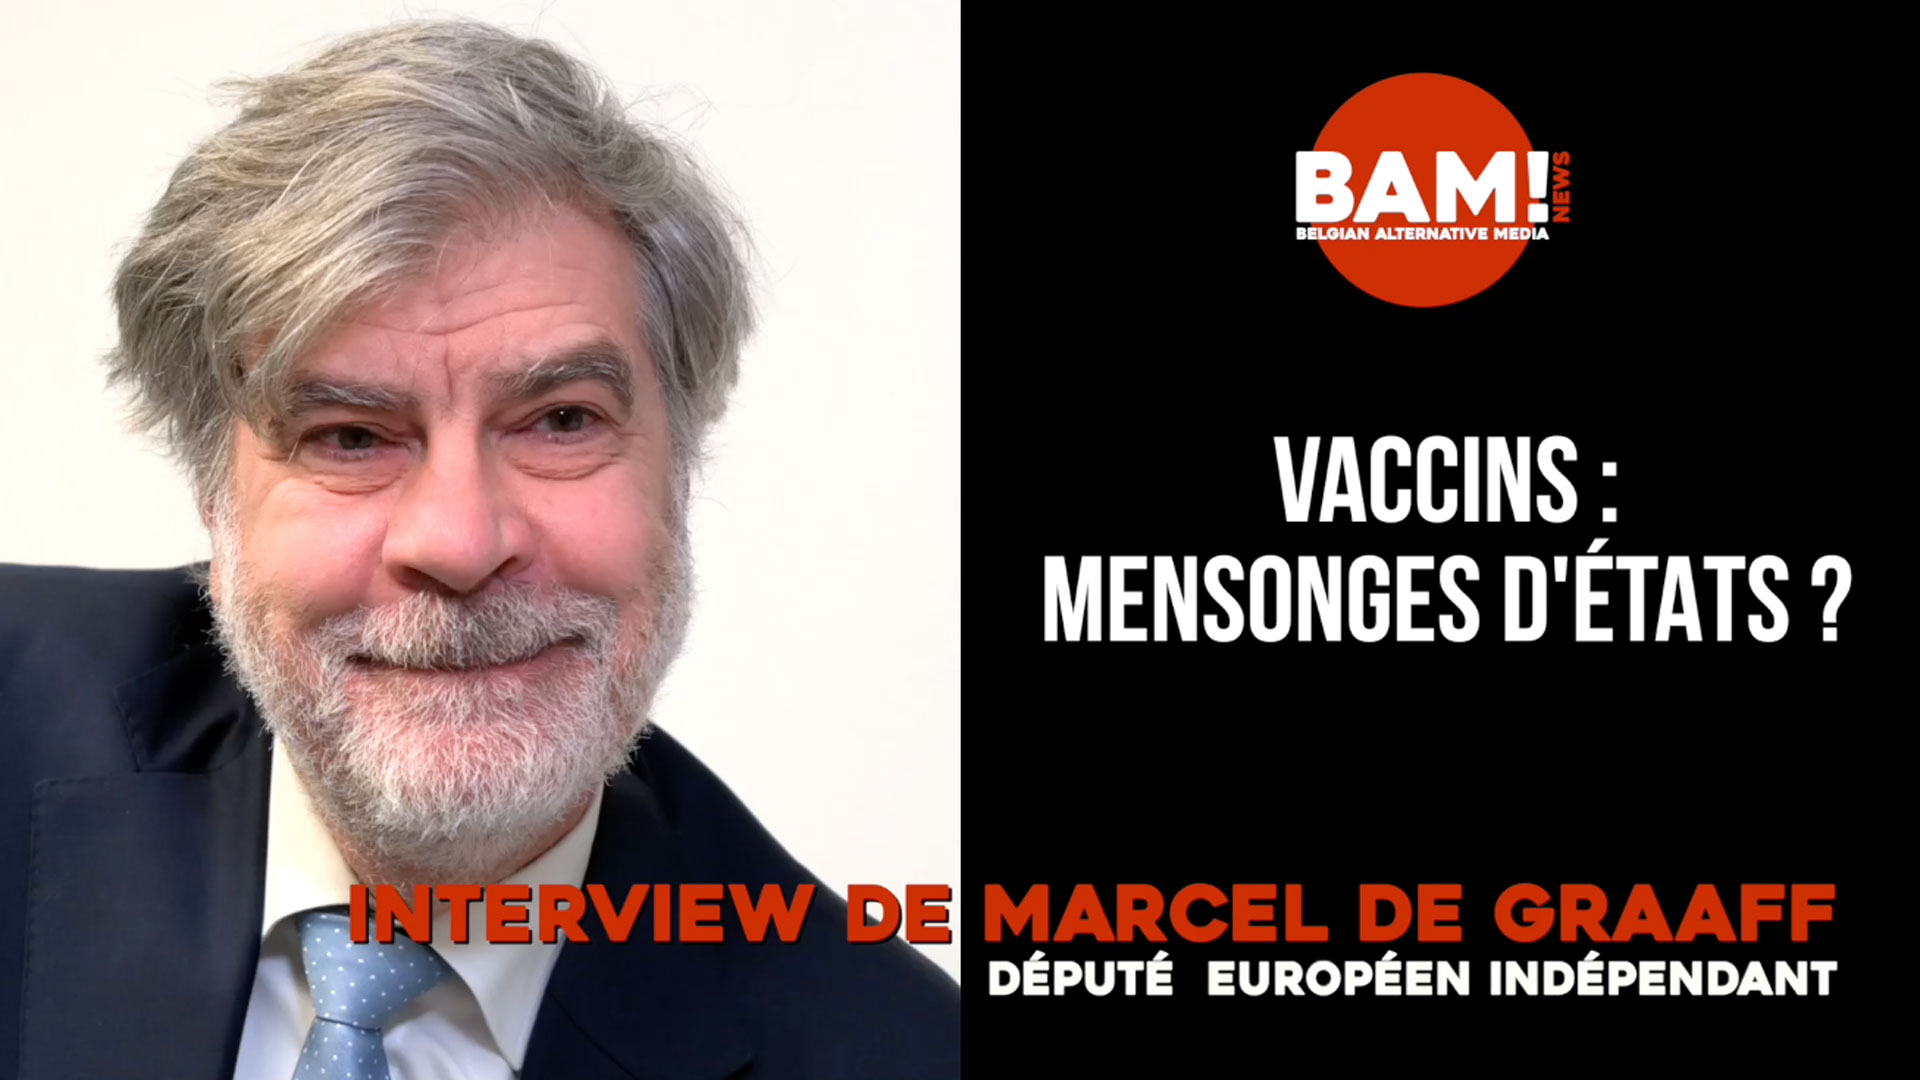 Vaccins : Mensonges d’états ? - MARCEL DE GRAAFF